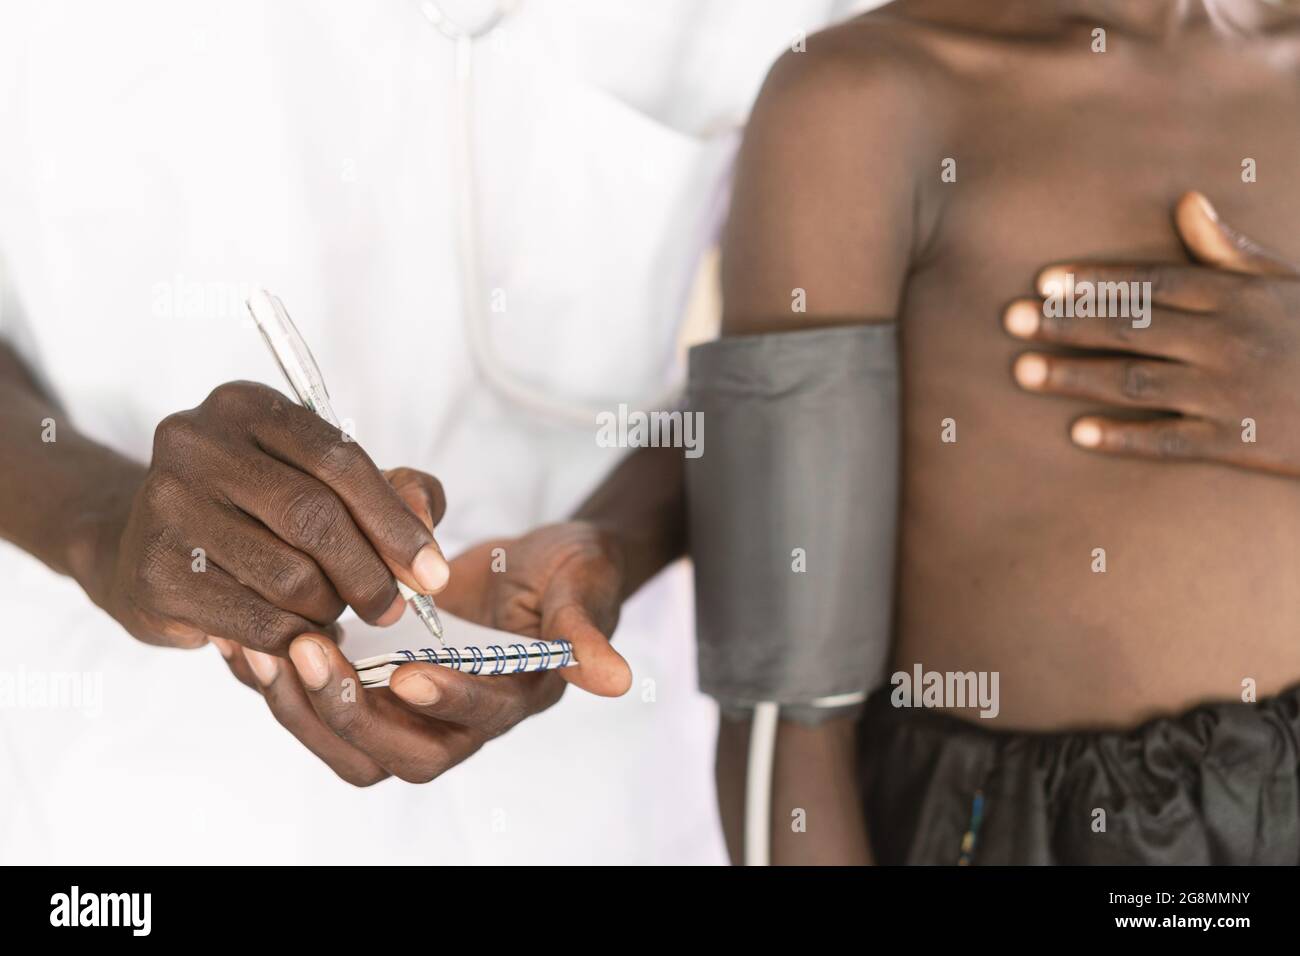 Questa immagine mostra un dispositivo di misurazione della pressione  sanguigna sul braccio superiore destro di un piccolo bambino africano  skinny con la mano sul petto in piedi accanto a Foto stock -